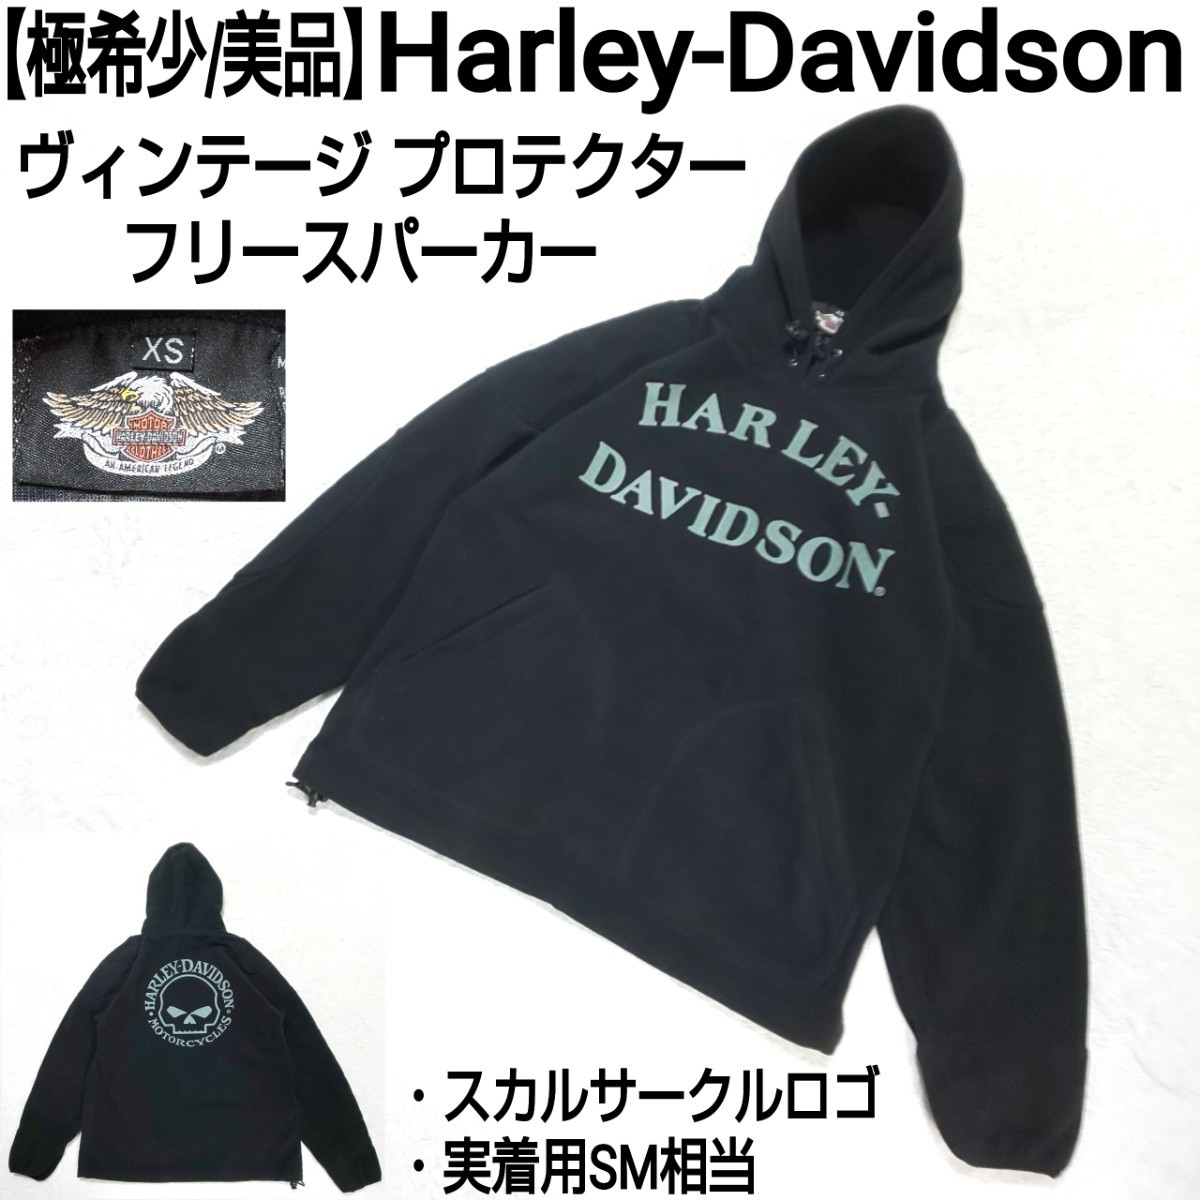 【極希少/美品】Harley-Davidson ハーレーダビッドソン ヴィンテージ プロテクターフリースパーカー スカルサークルロゴ デカロゴ ブラック